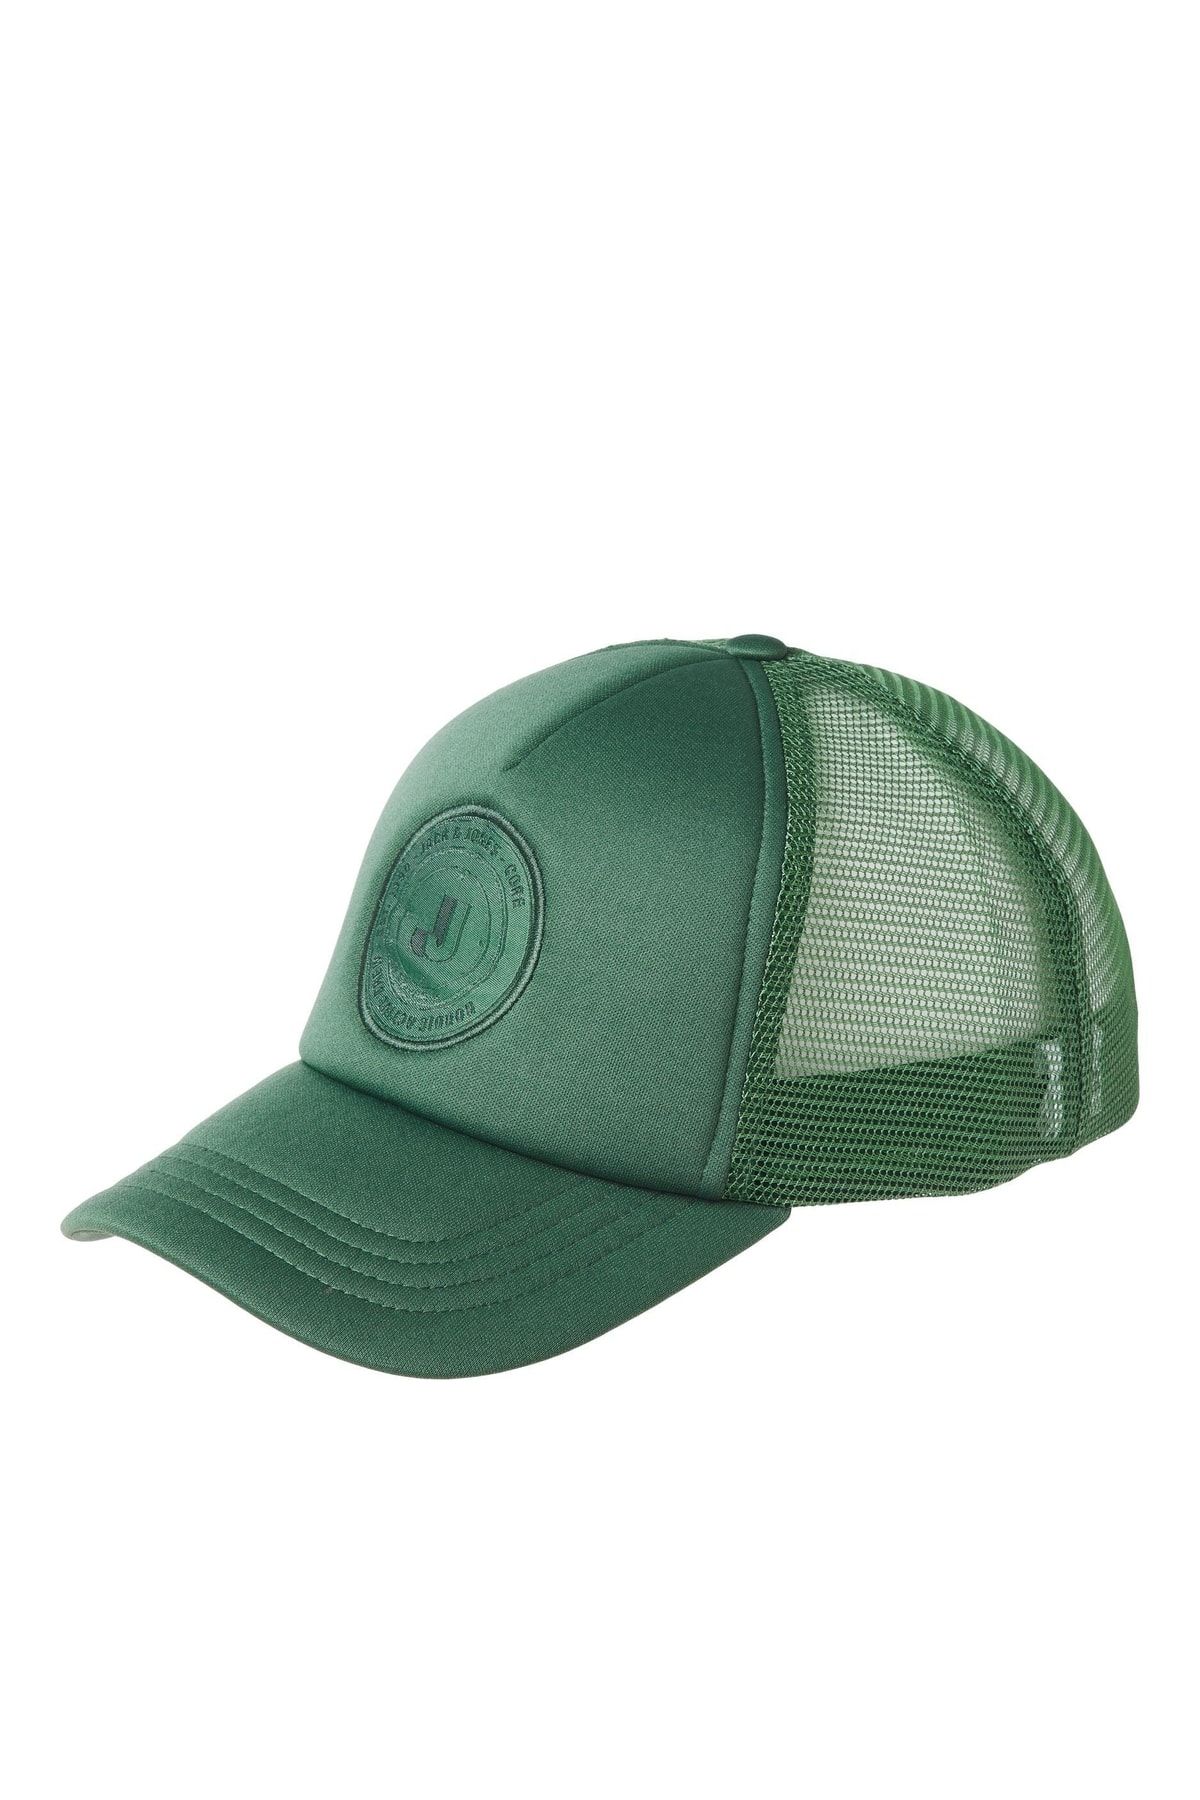 Jack & Jones Jack Jones Vıbes Trucker Cap Erkek Yeşil Şapka 12235601-21